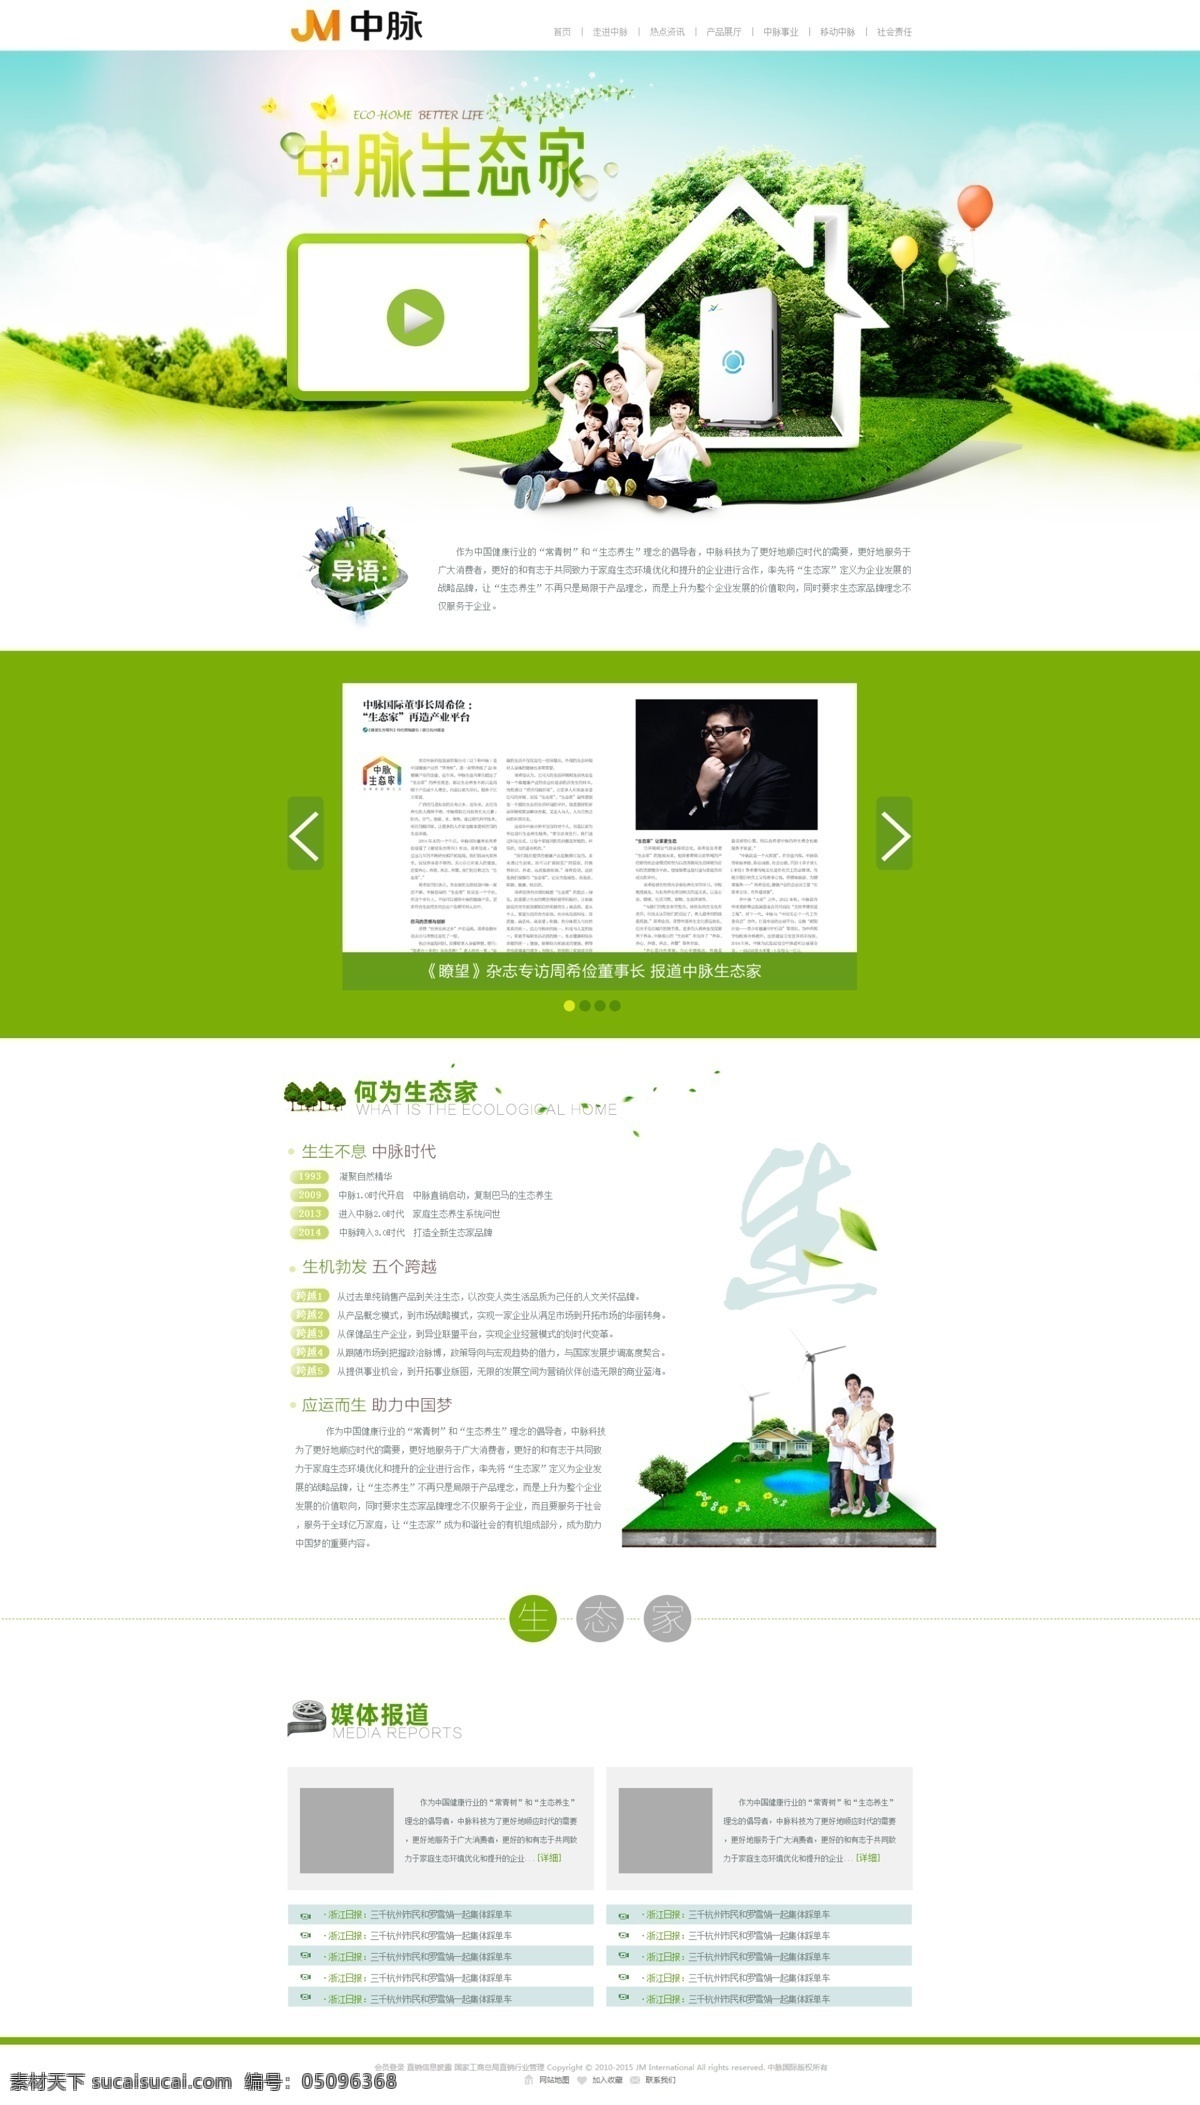 生态 家 专题 无 代码 生态家 中脉 绿色 快乐家庭 简约 web 界面设计 中文模板